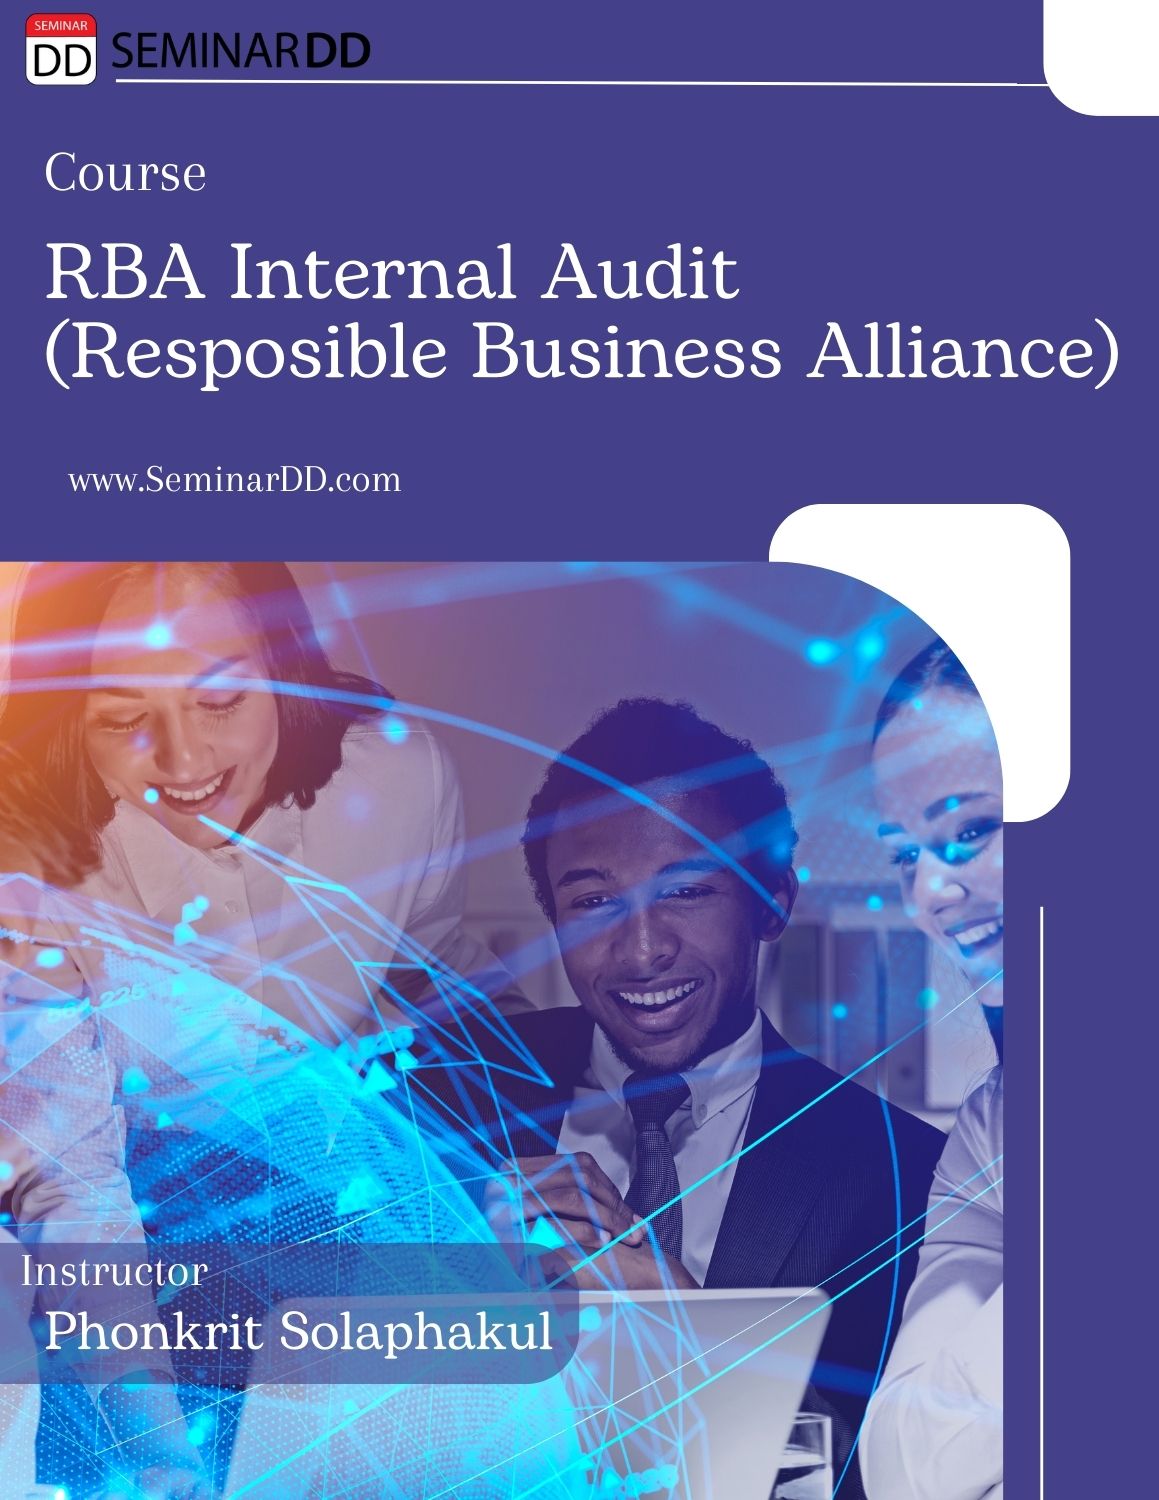 หลักสูตร  Internal Audit  RBA - Responsible Business Alliance